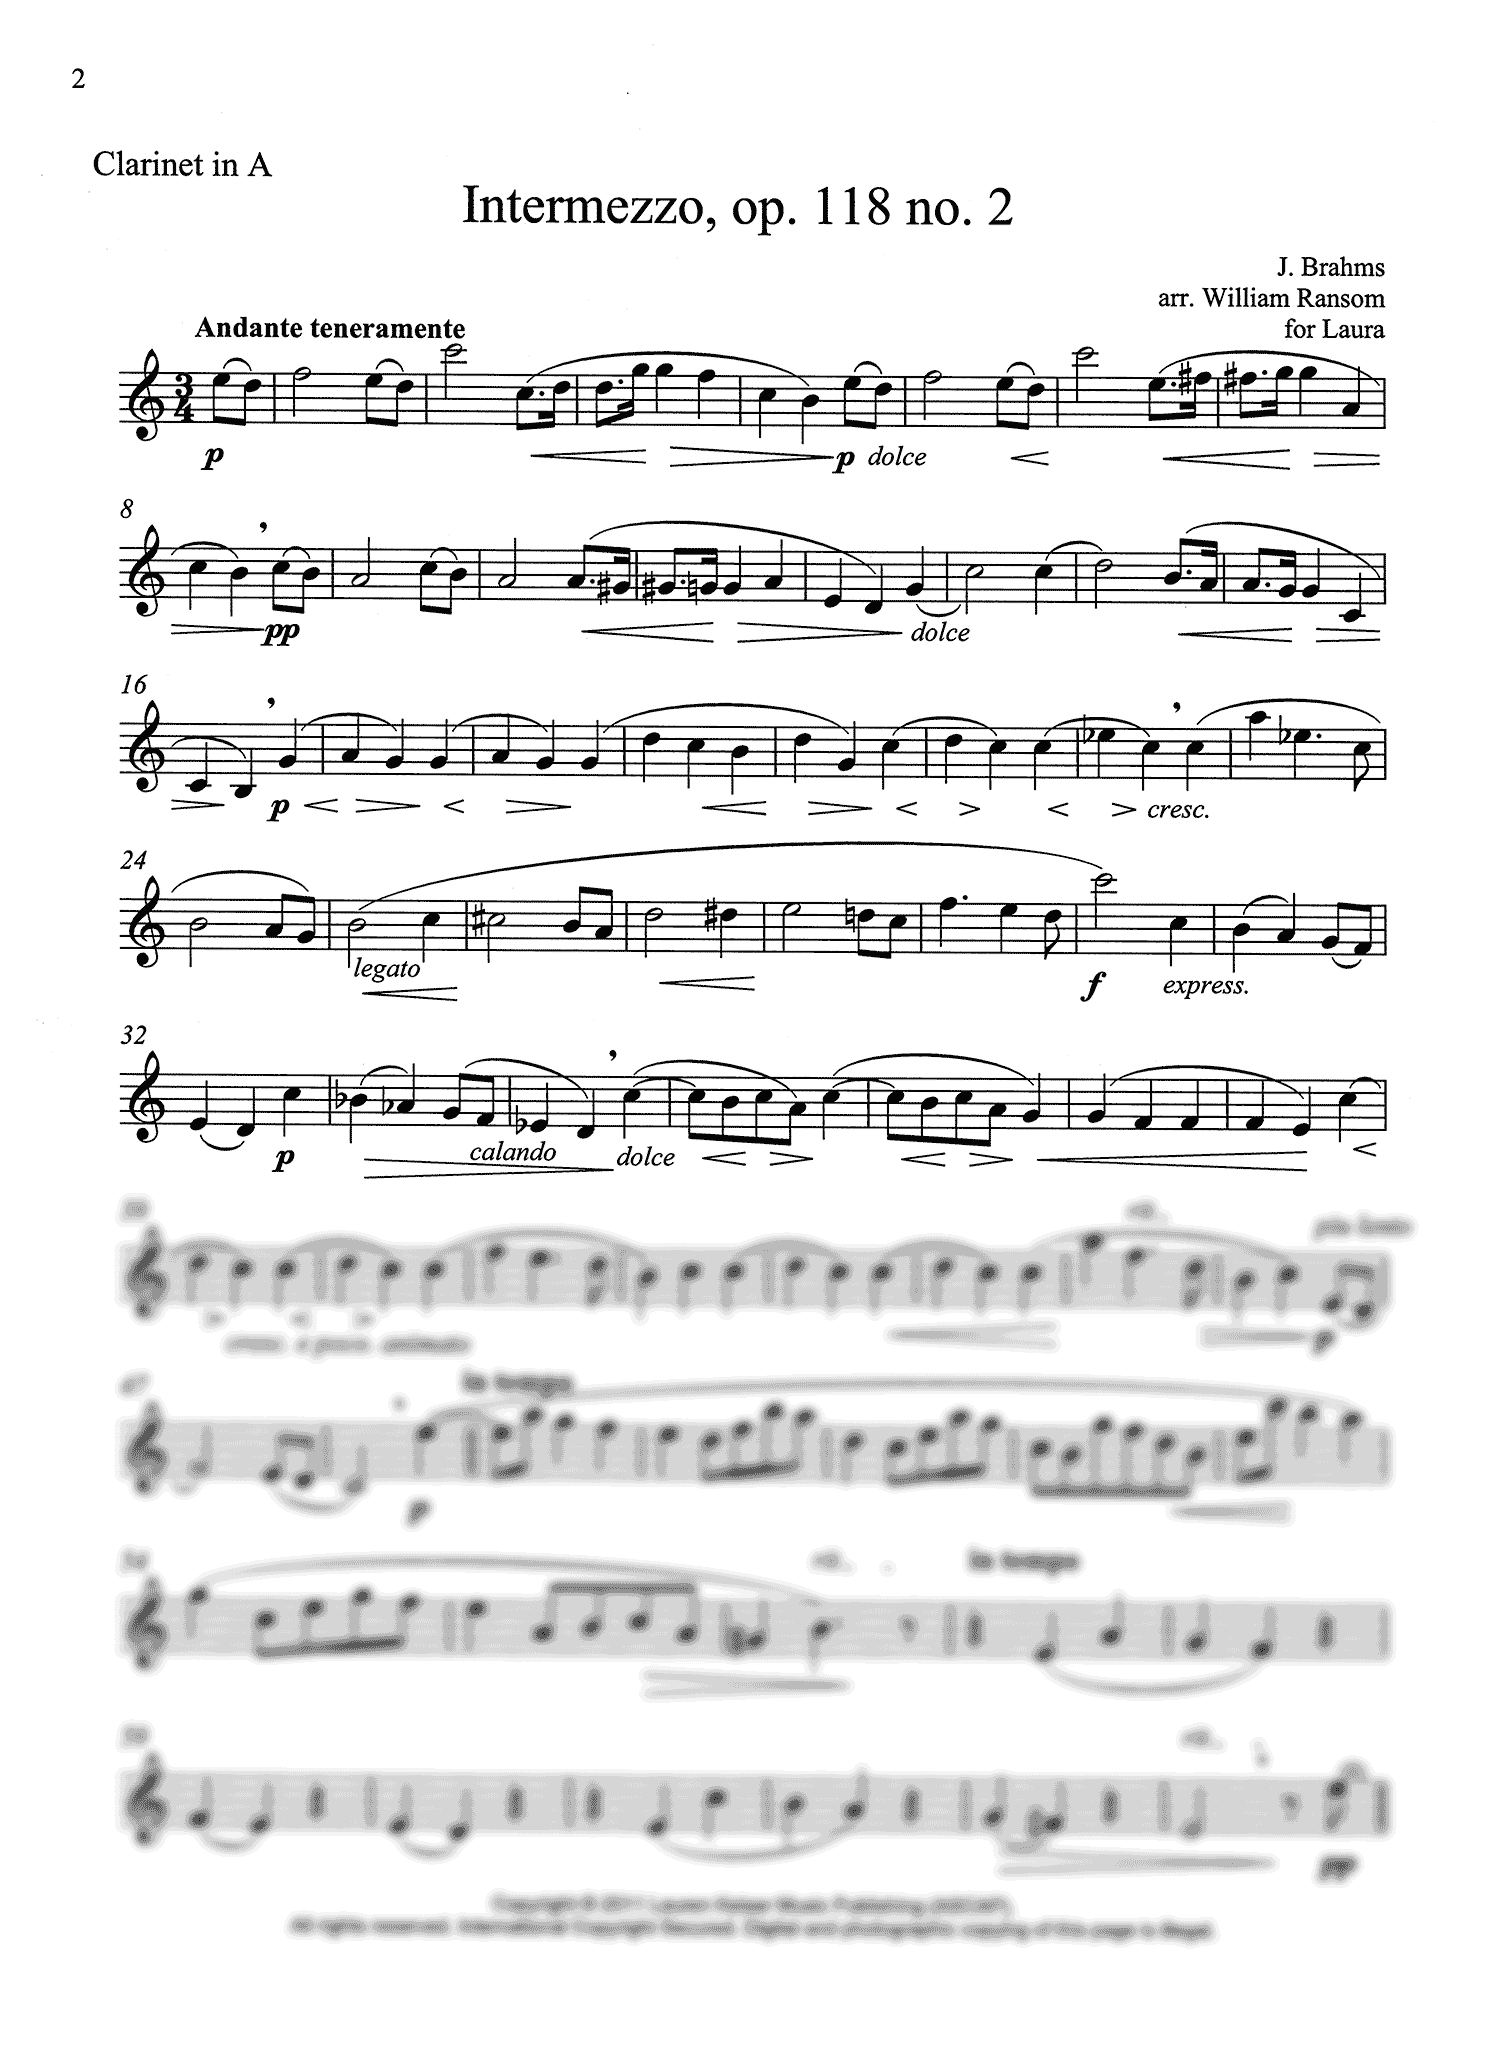 Intermezzo, Op. 118 No. 2 Concert A, A Clarinet part 